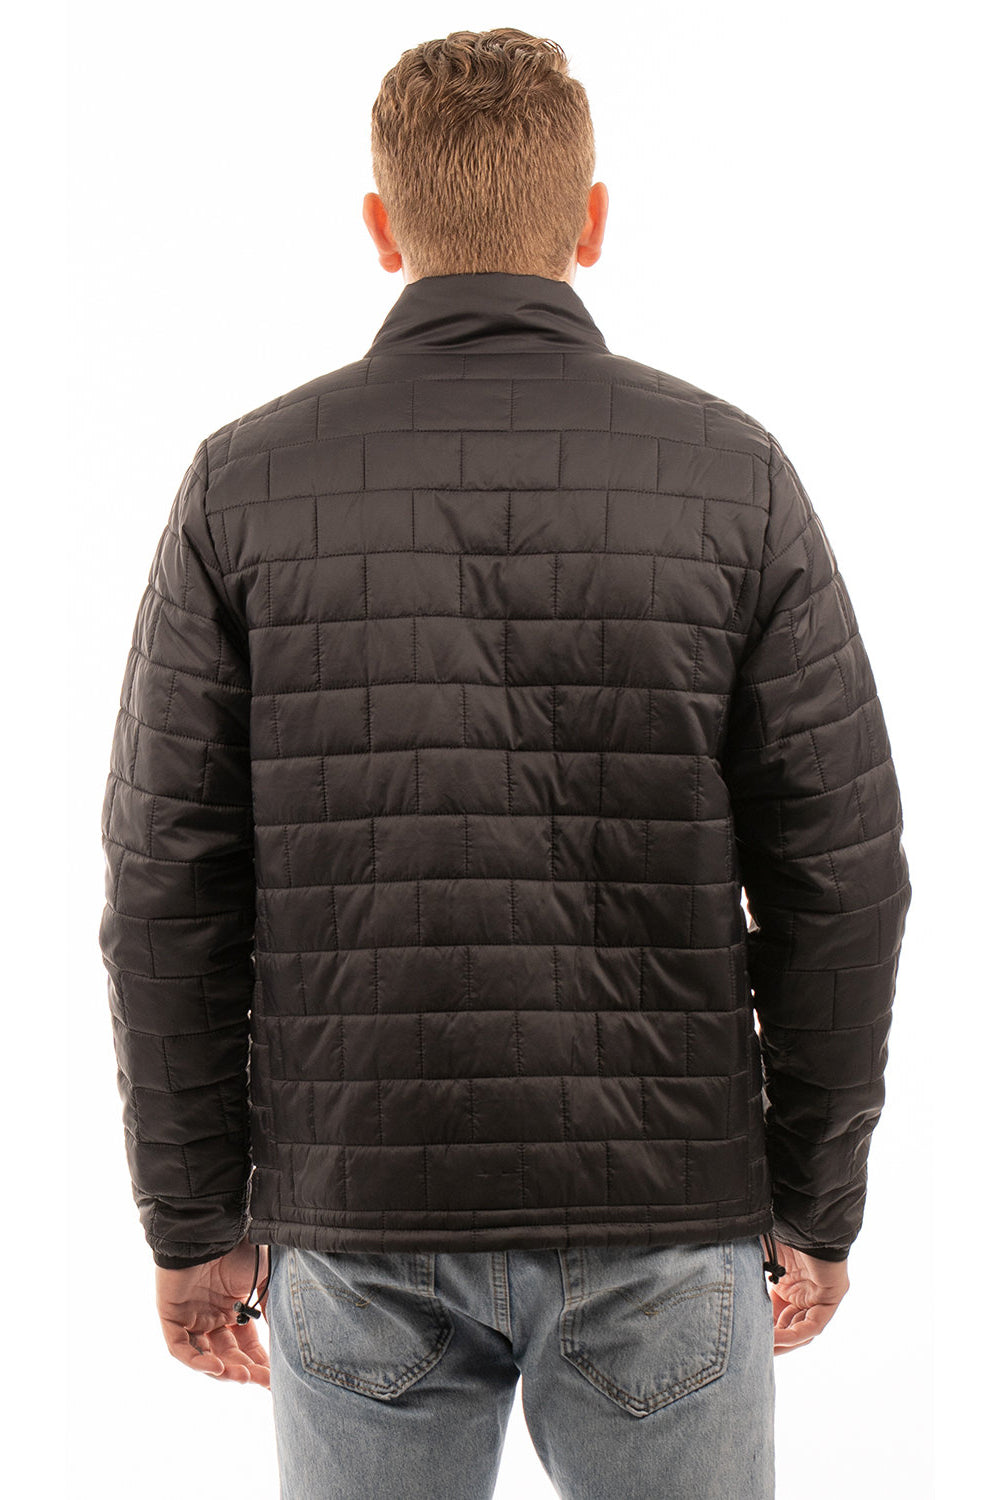 Burnside 8713 Mens Element Full Zip Puffer Jacket Black Model Back